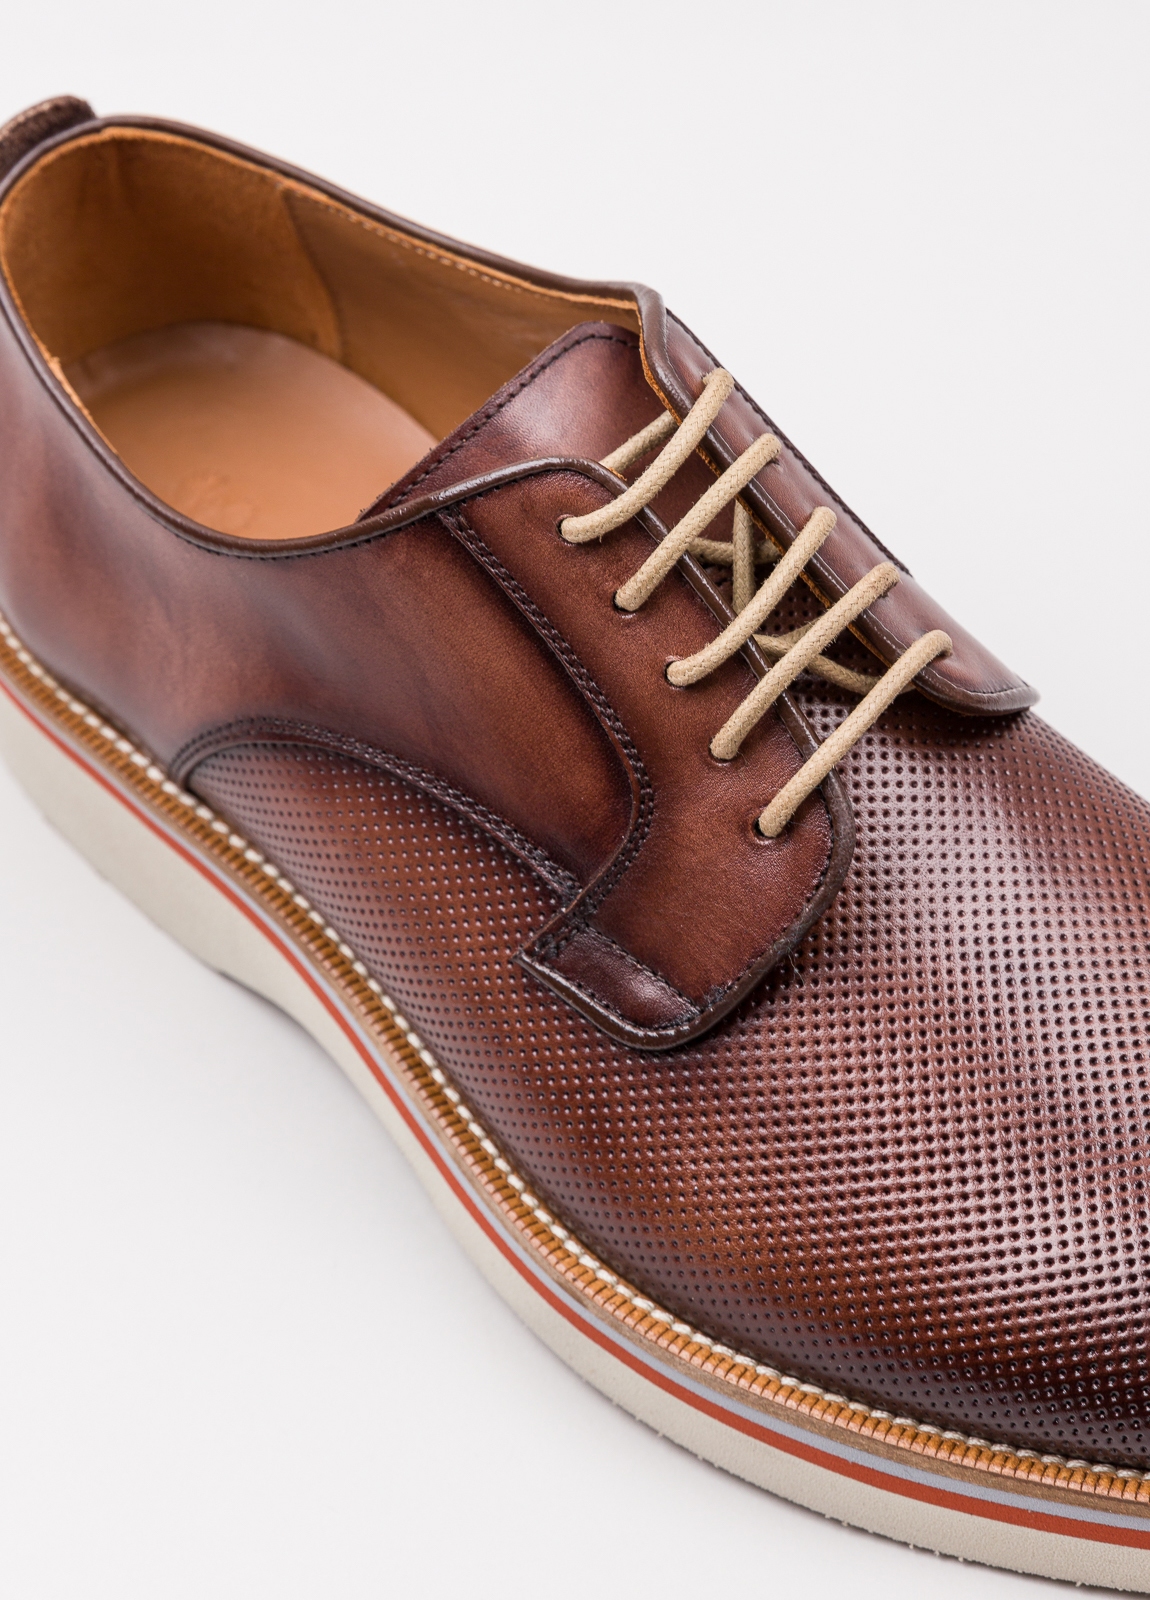 Zapato sport wear furest colección troquelado marrón - Ítem6